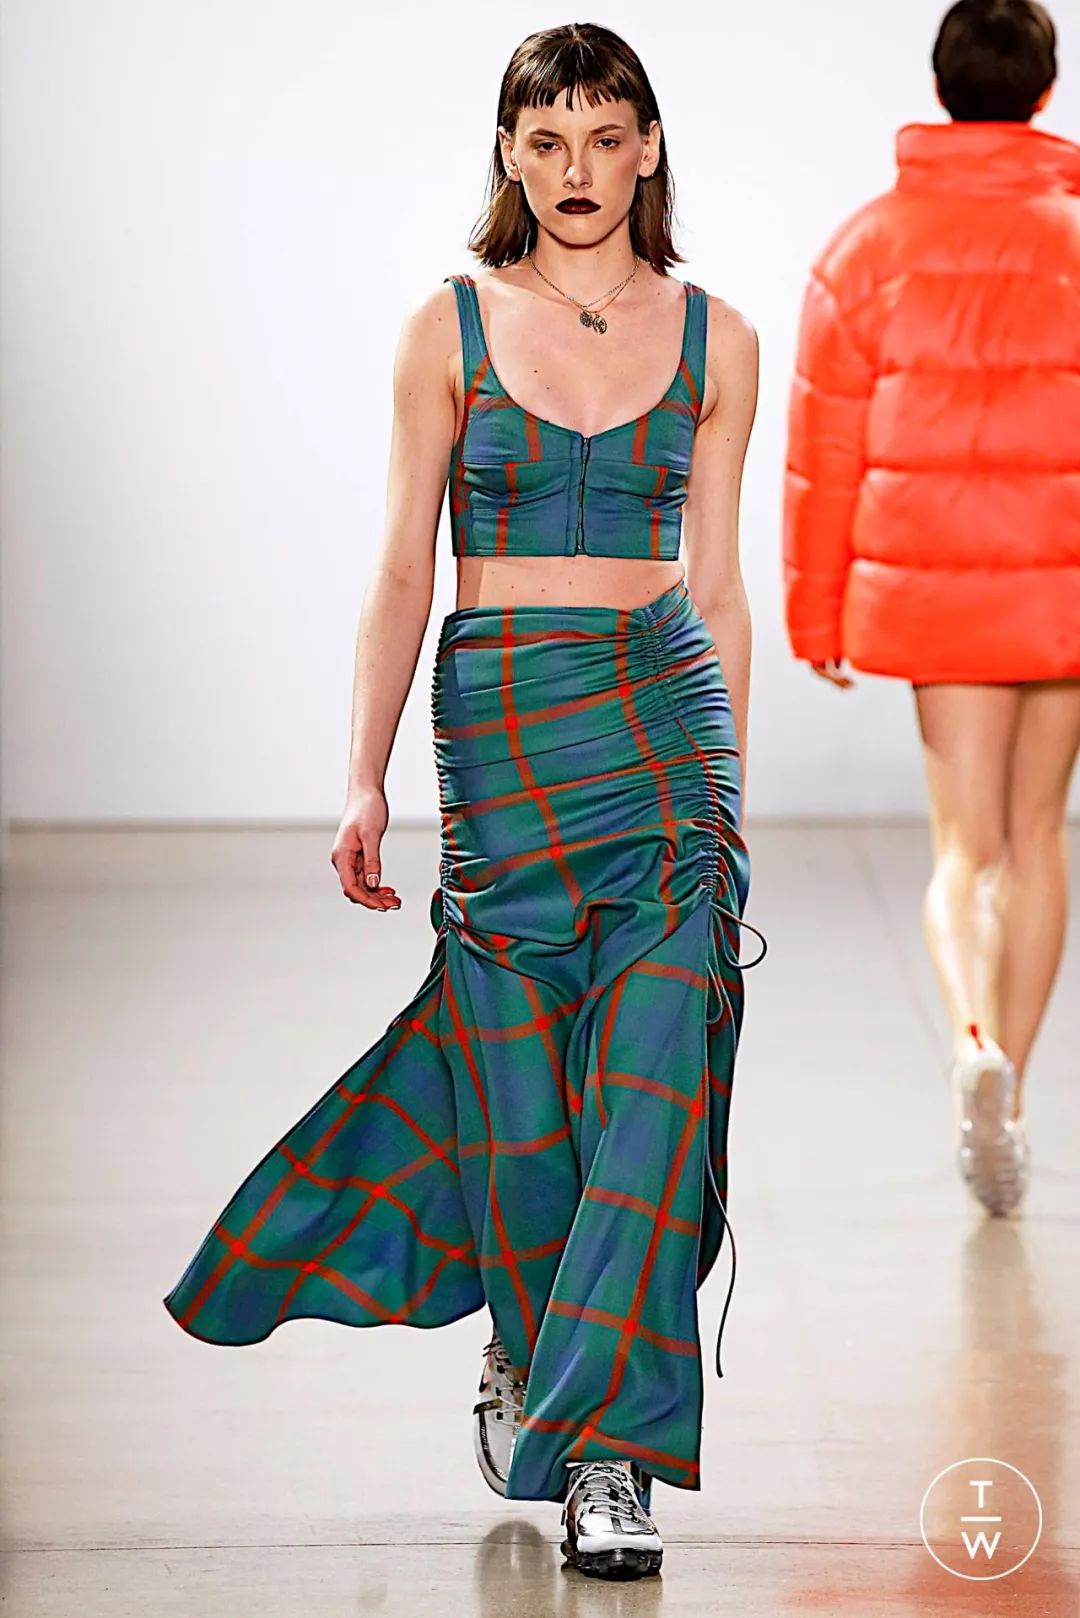 格子裙2019/20秋冬女装流行面料设计灵感源自丰富多样的传统苏格兰格